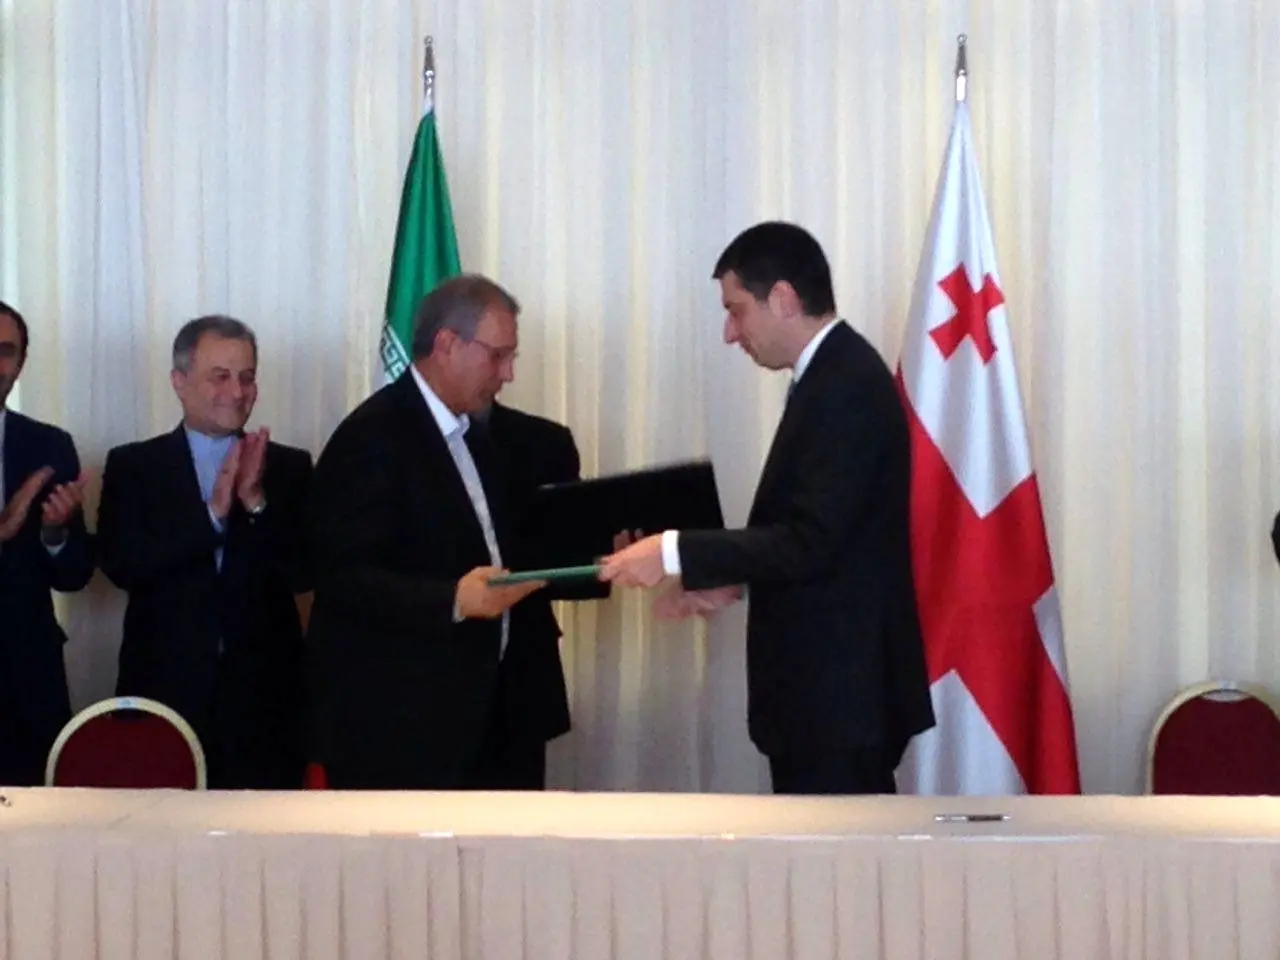  ایران و گرجستان تفاهم نامه مشترک اقتصادی امضا کردند